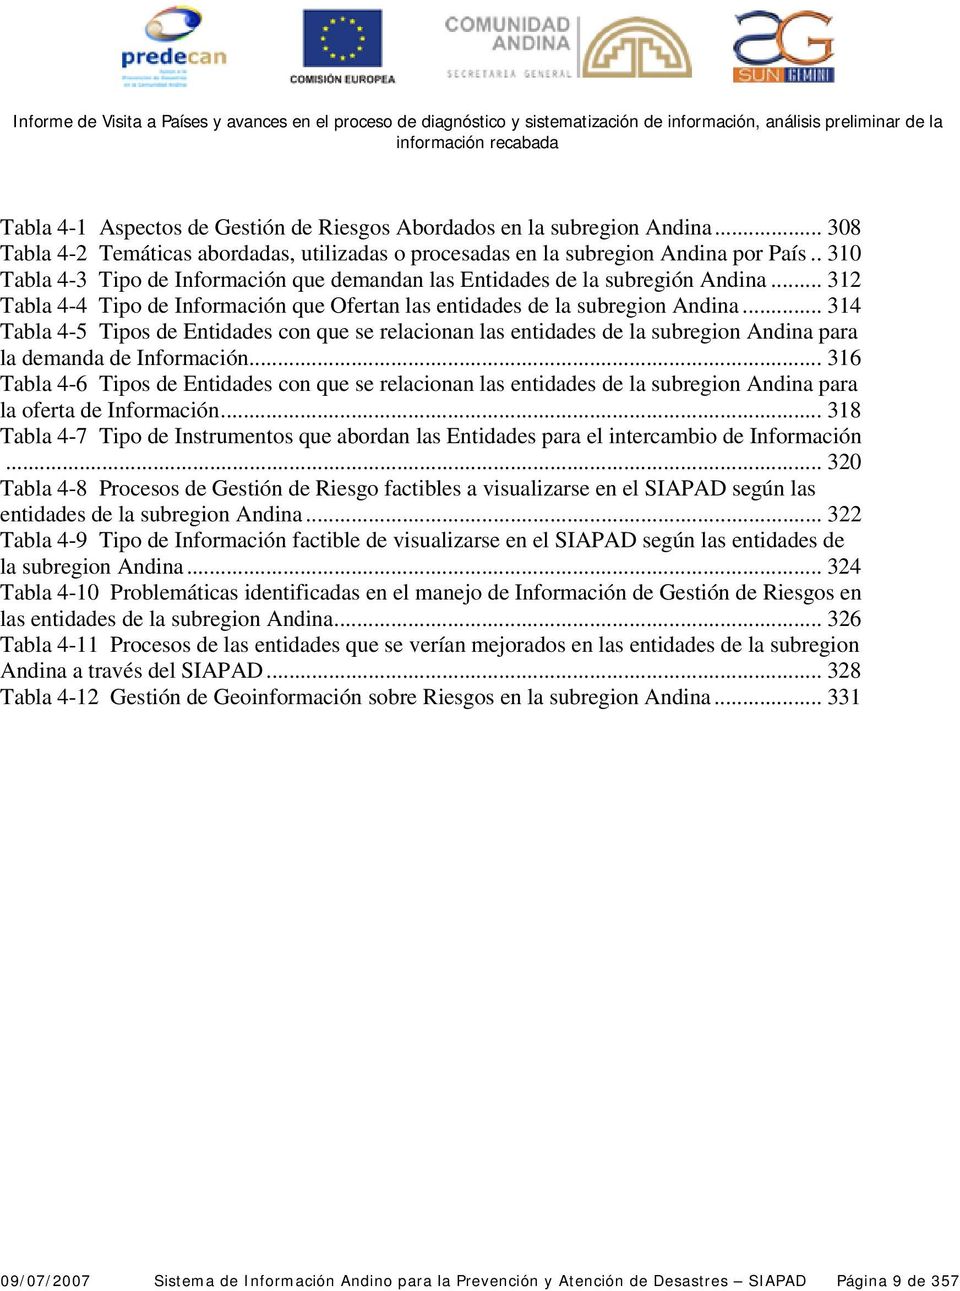 .. 314 Tabla 4-5 Tipos de Entidades con que se relacionan las entidades de la subregion Andina para la demanda de Información.